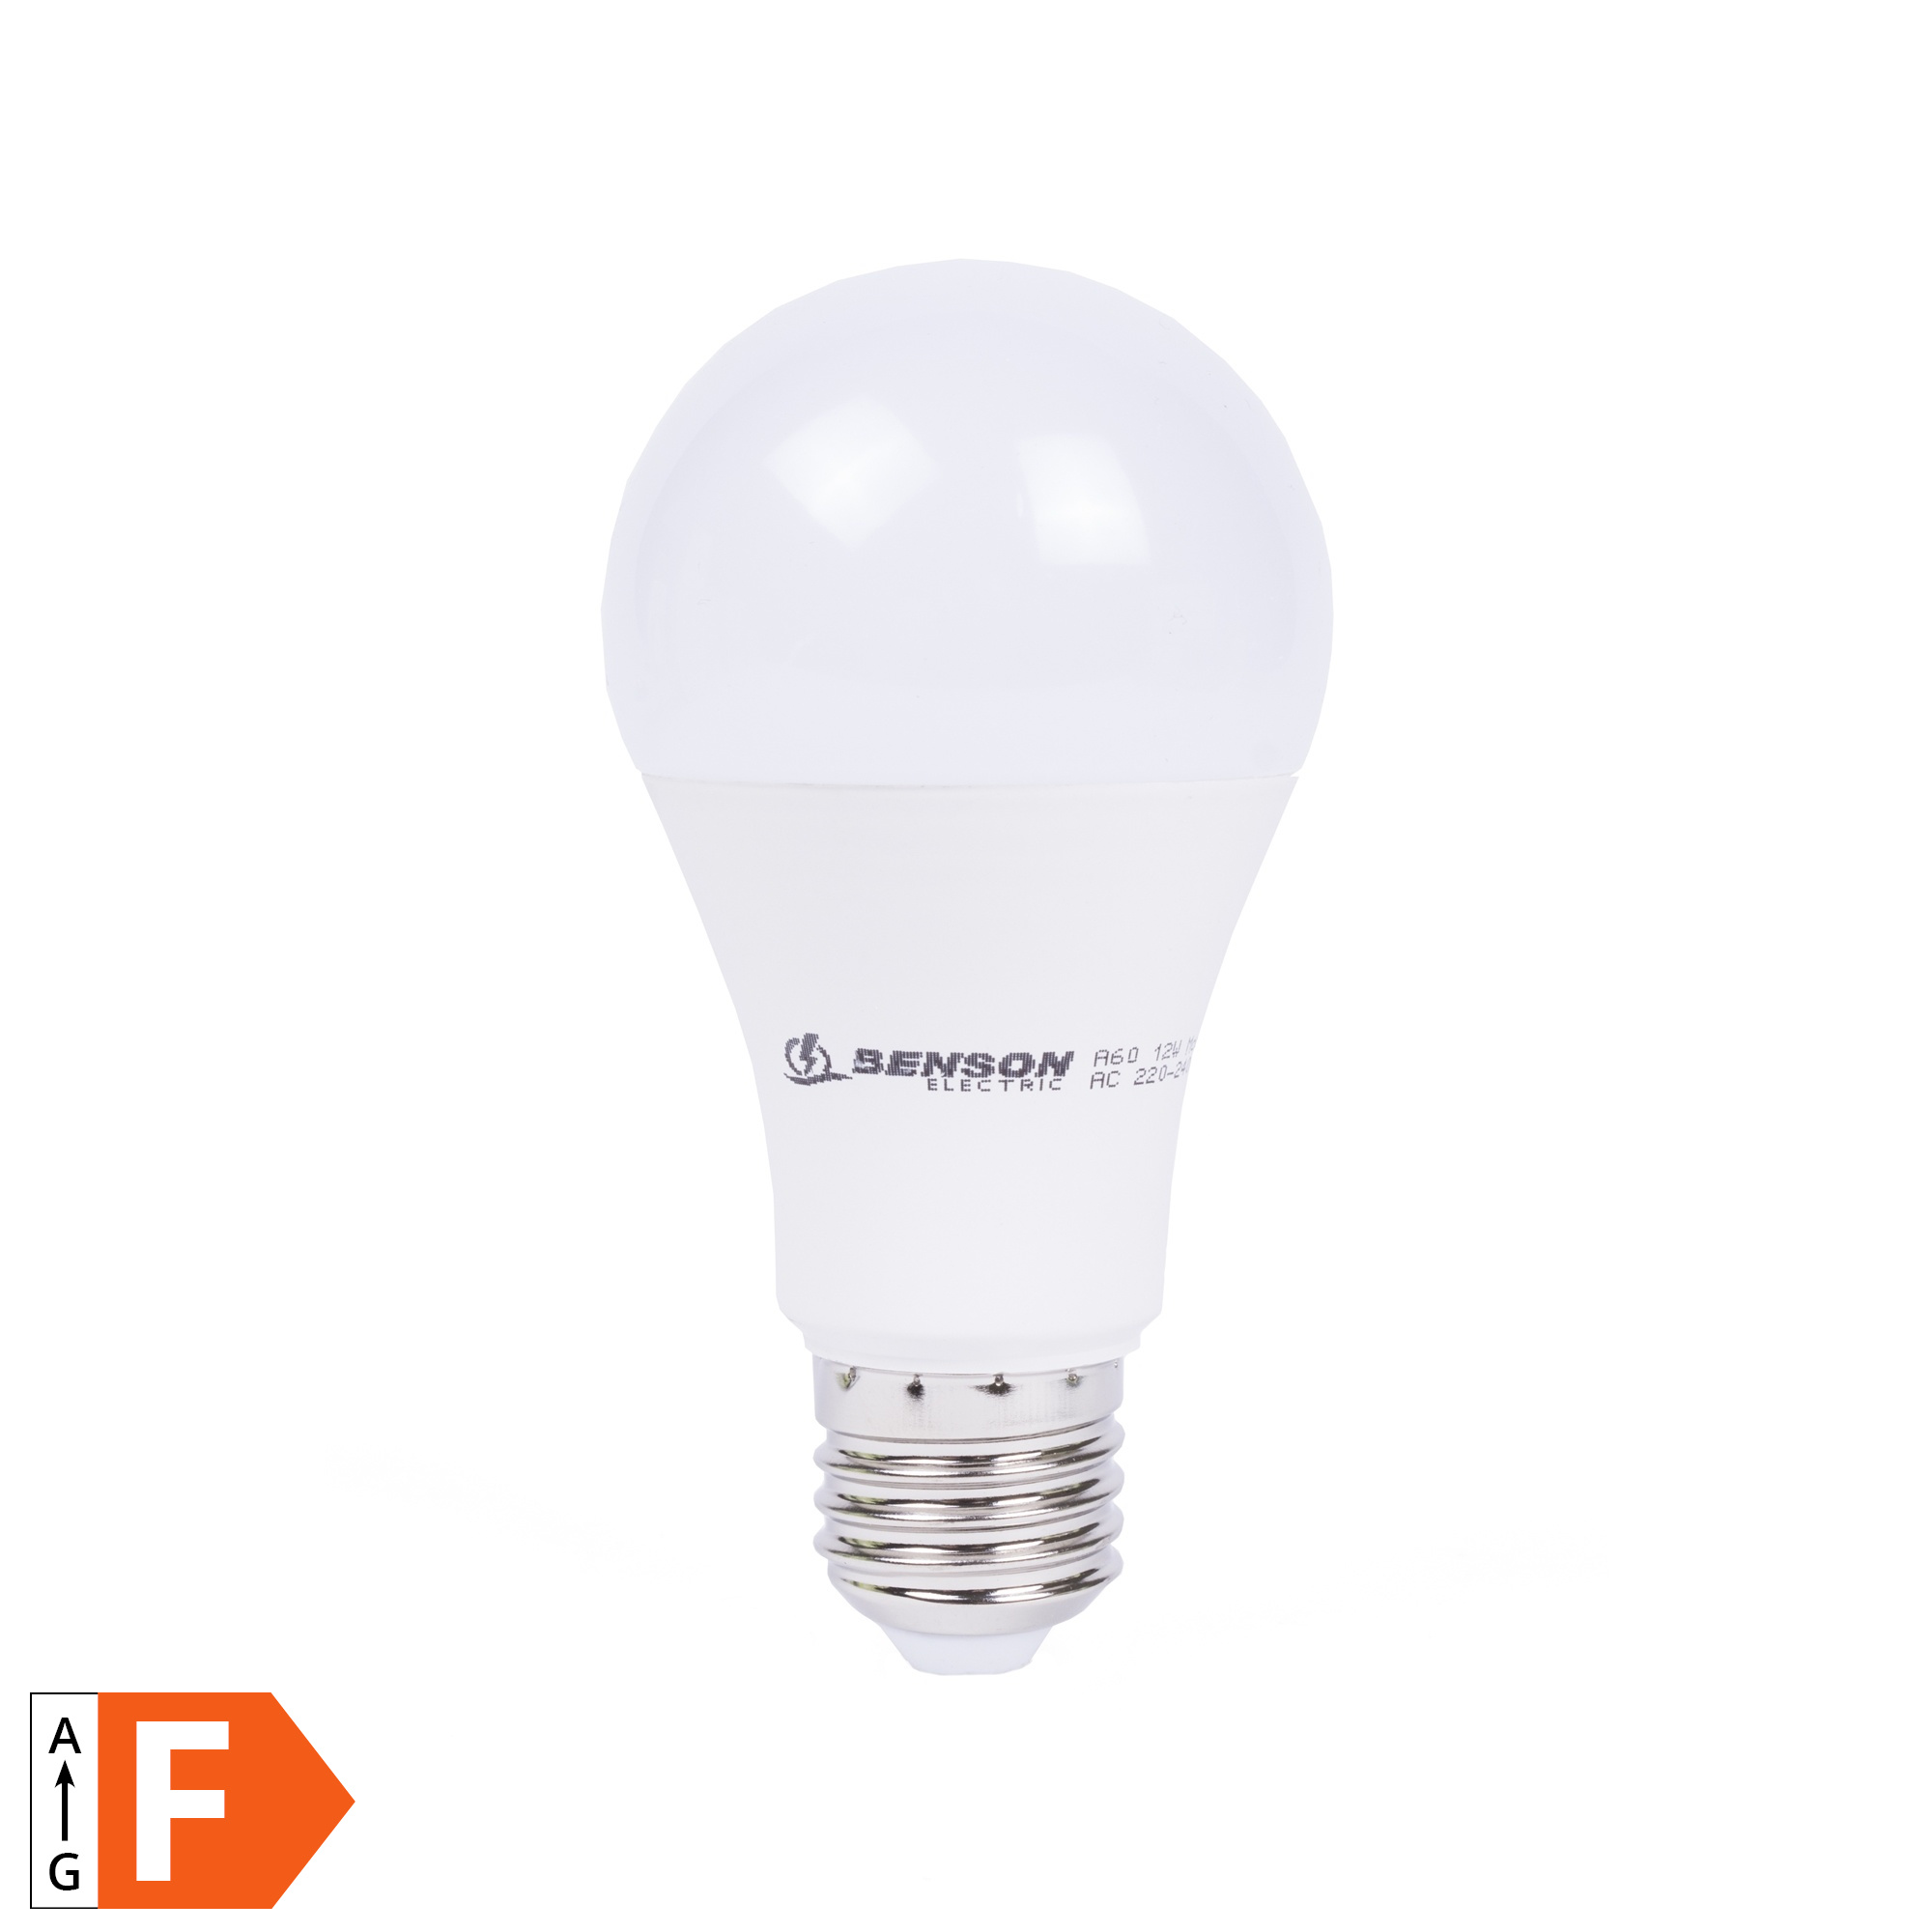 hout Doe voorzichtig Ouderling Benson Dimbare LED Lamp - 12 Watt. - Warmwit 3000K - E27 - Bol Wit -  220-240 Volt kopen? - 2Cheap